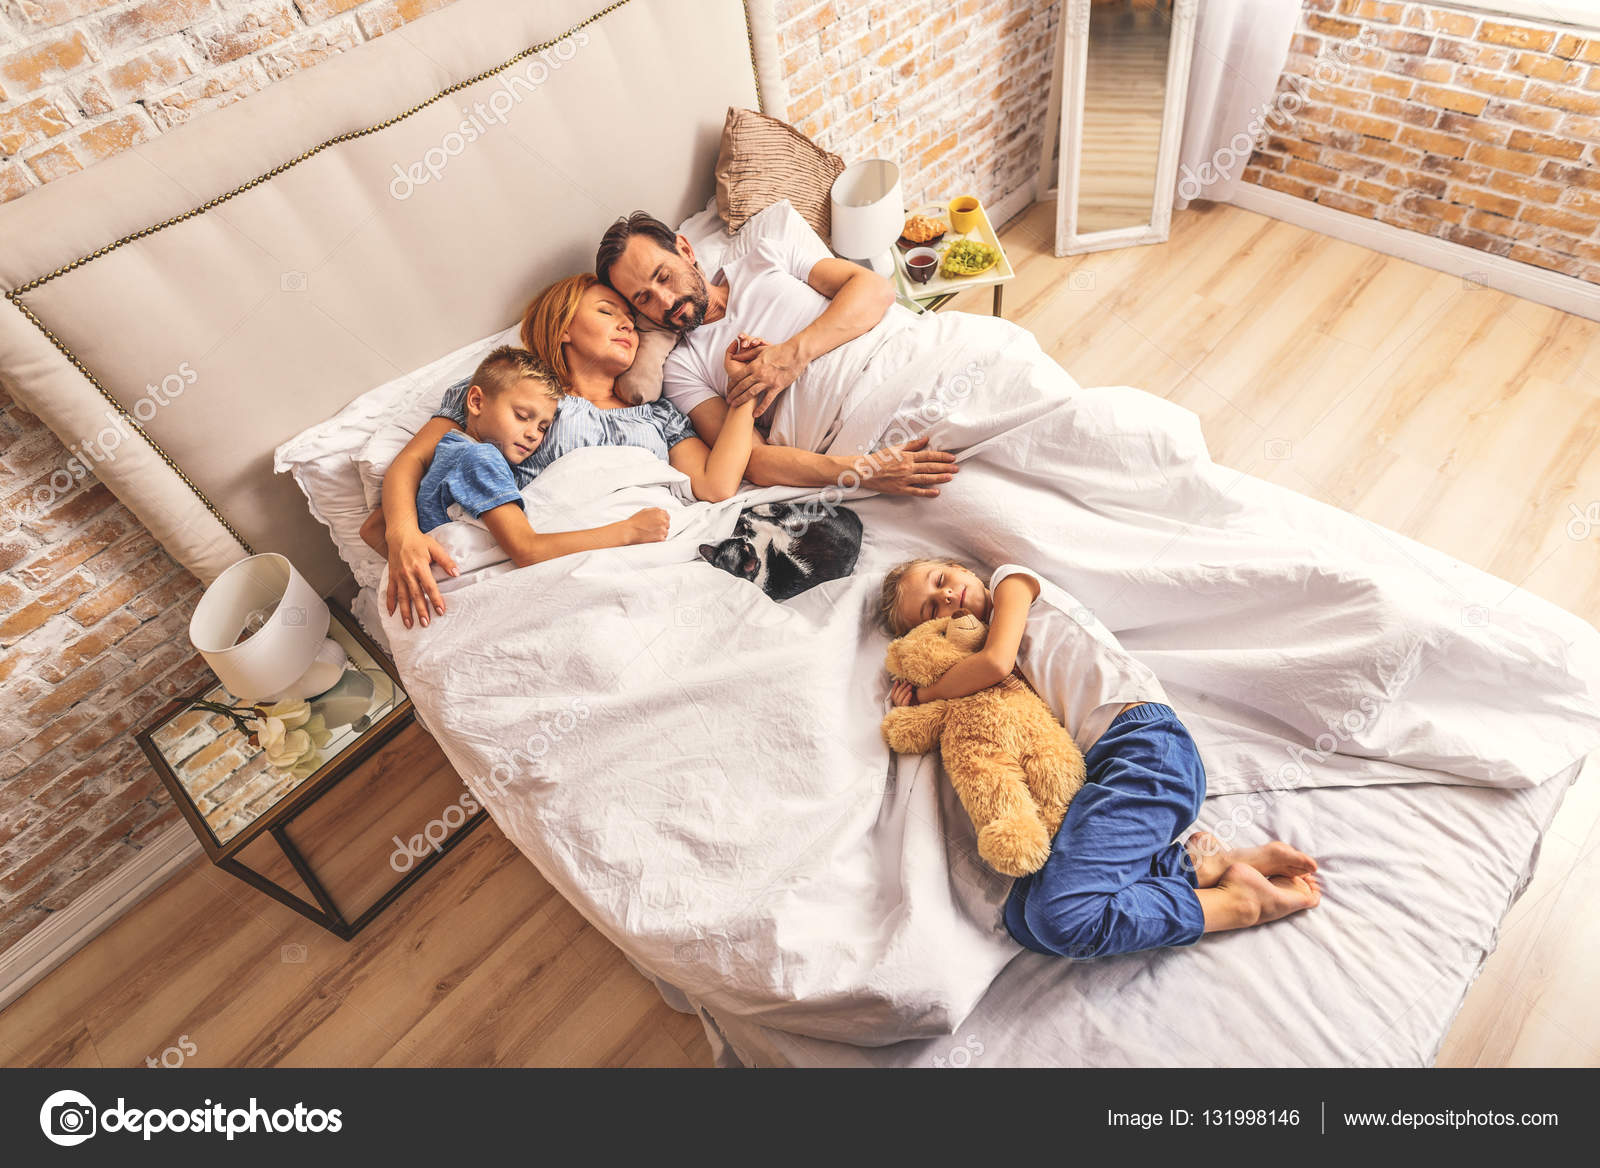 Брат мама одеяло. Семья в спальне. Семья в постели. Семья на кровати. Малыши на кровати с родителями.